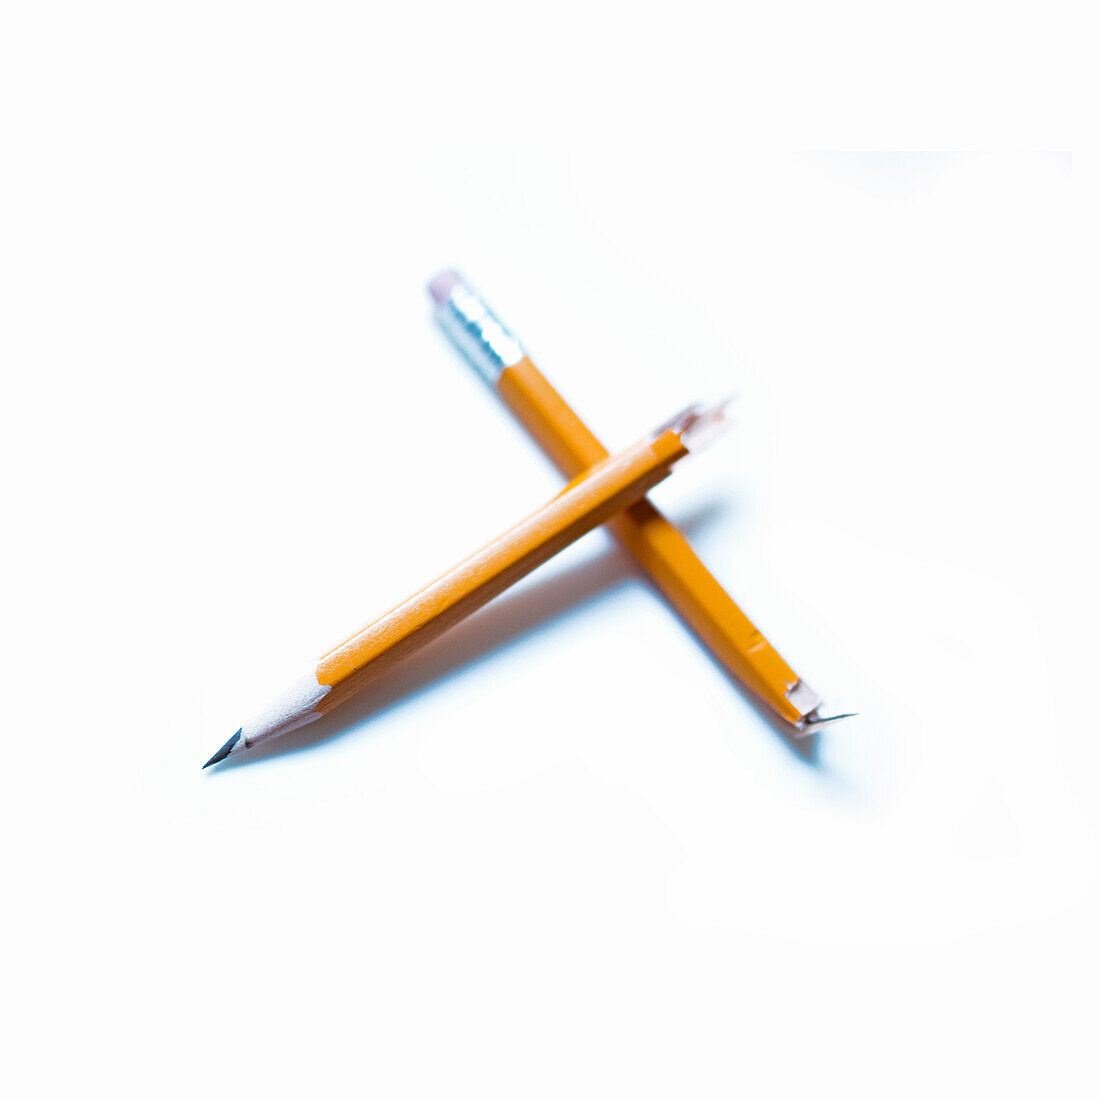 Zerbrochener Bleistift auf weißem Hintergrund